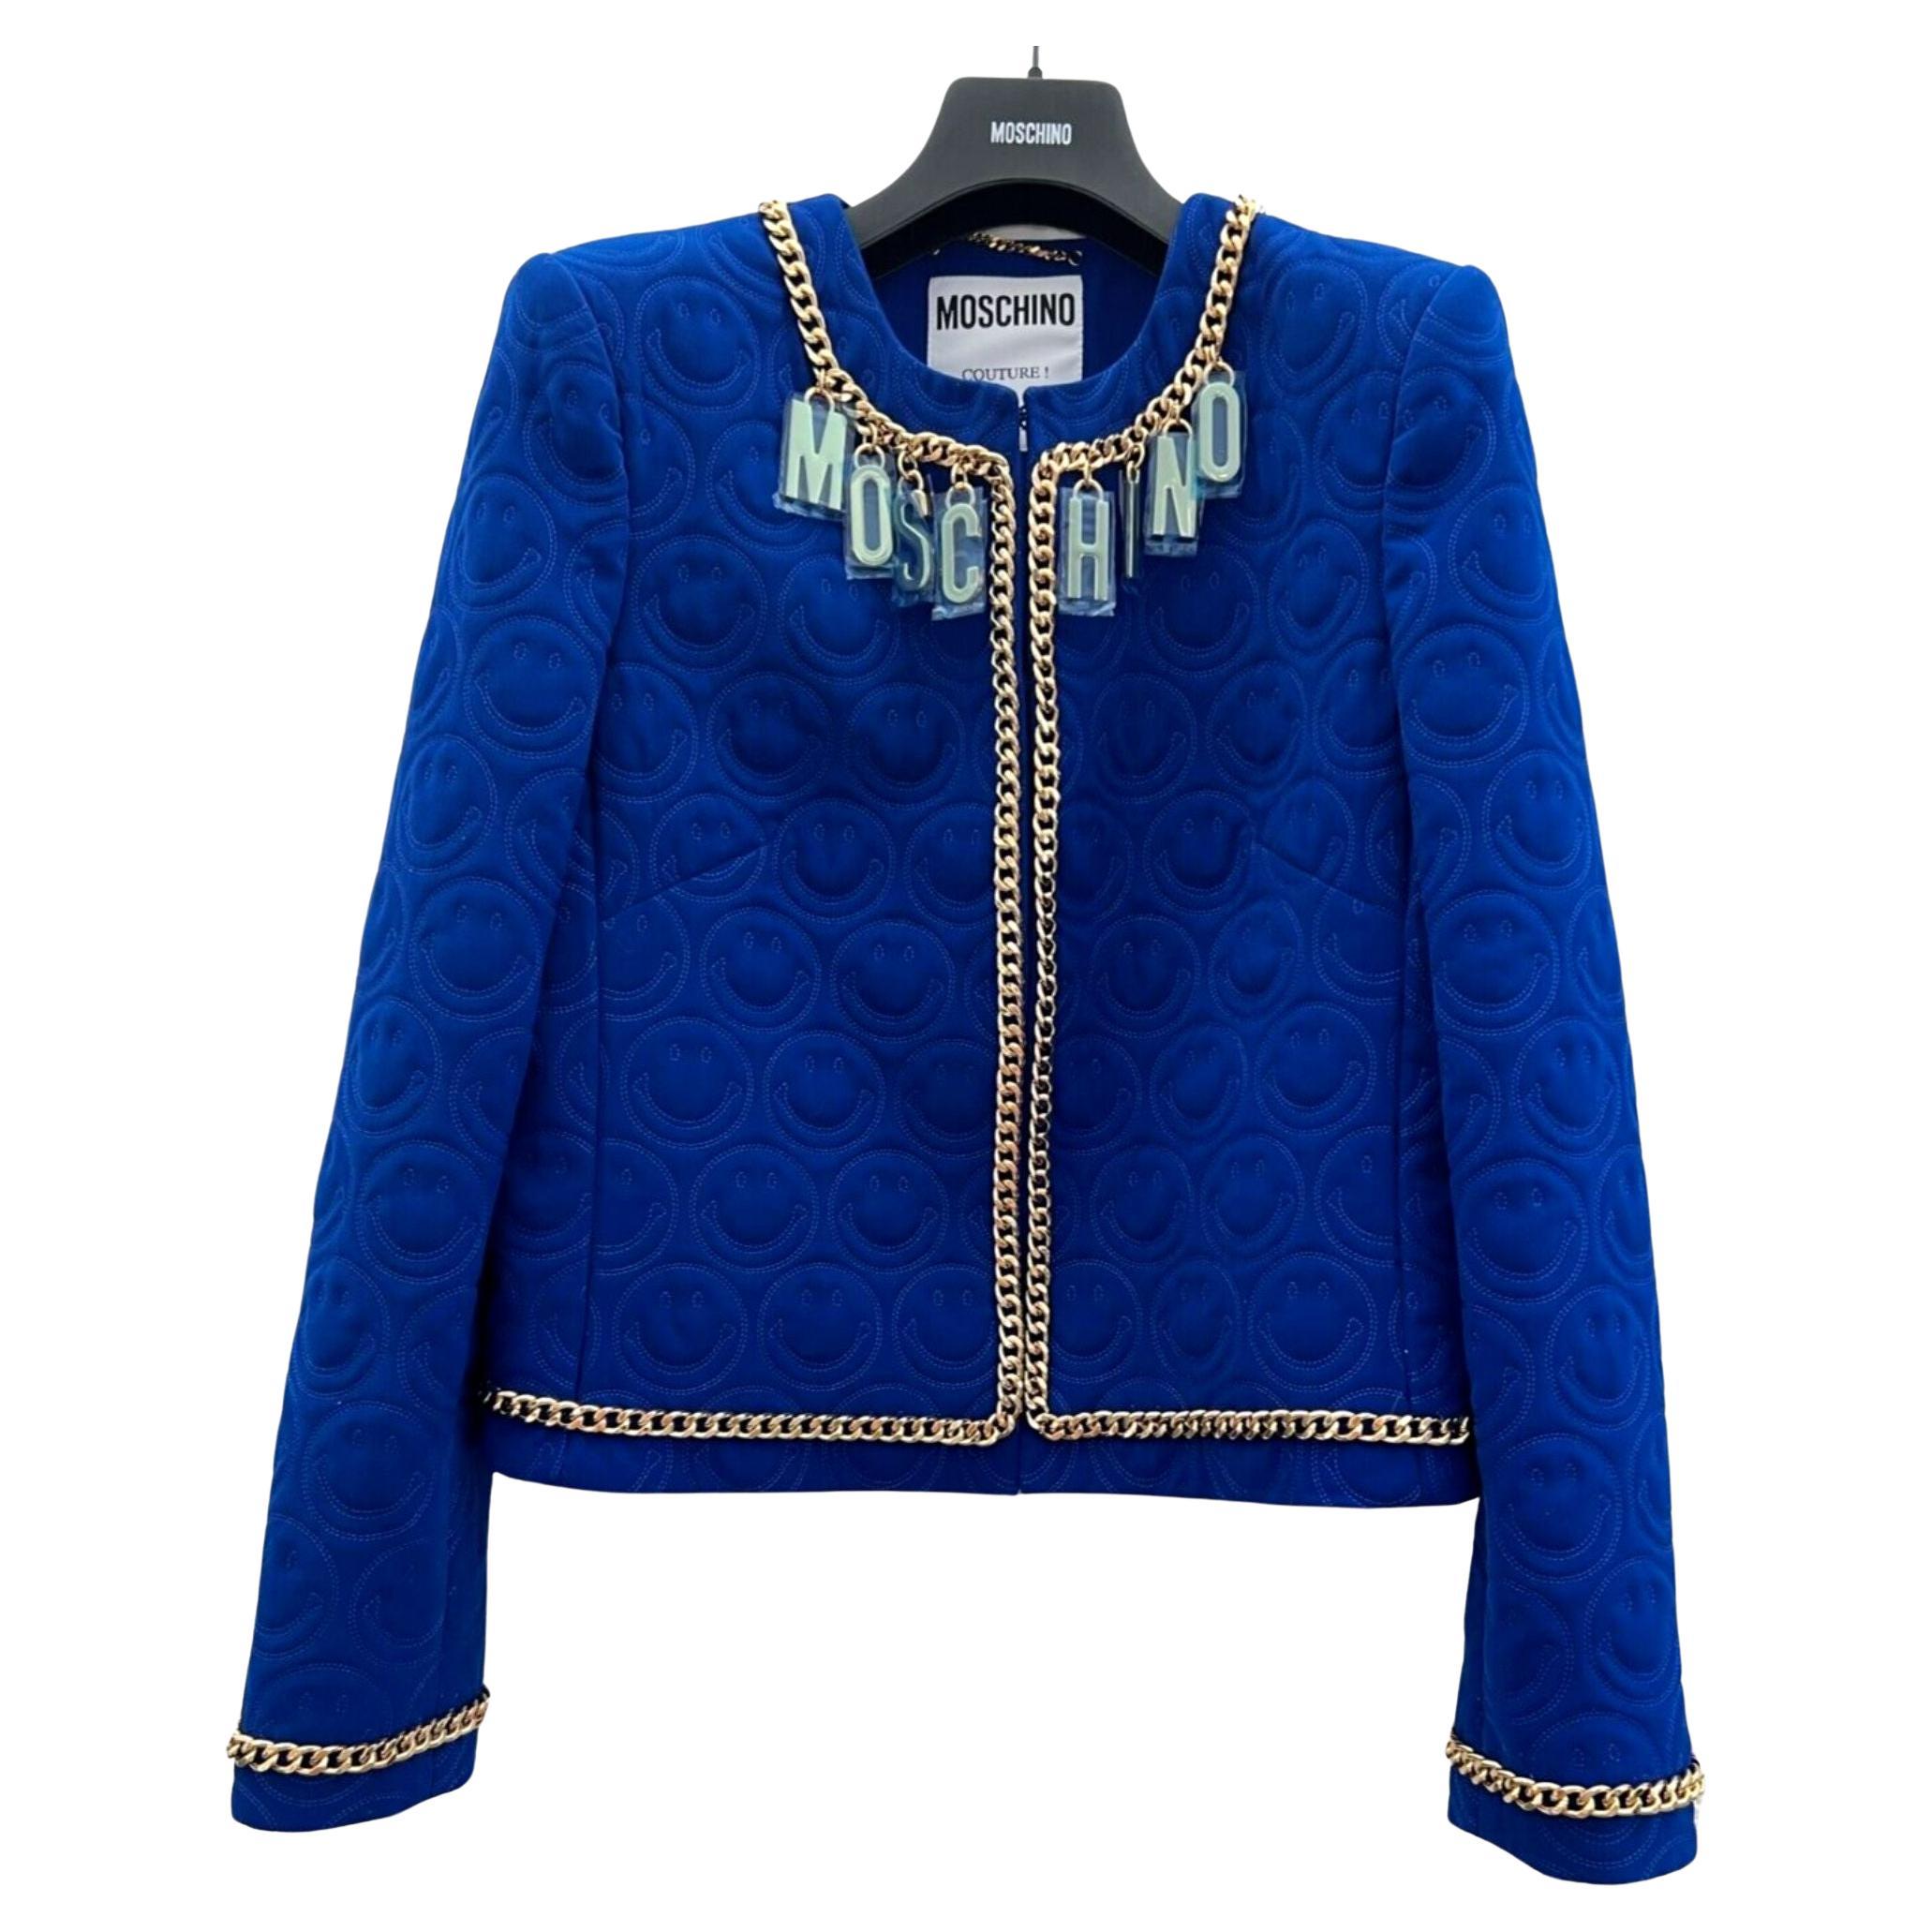 SS21 Moschino Couture Blauer Blazer mit smiley Face von Jeremy Scott, Größe US 10 im Angebot